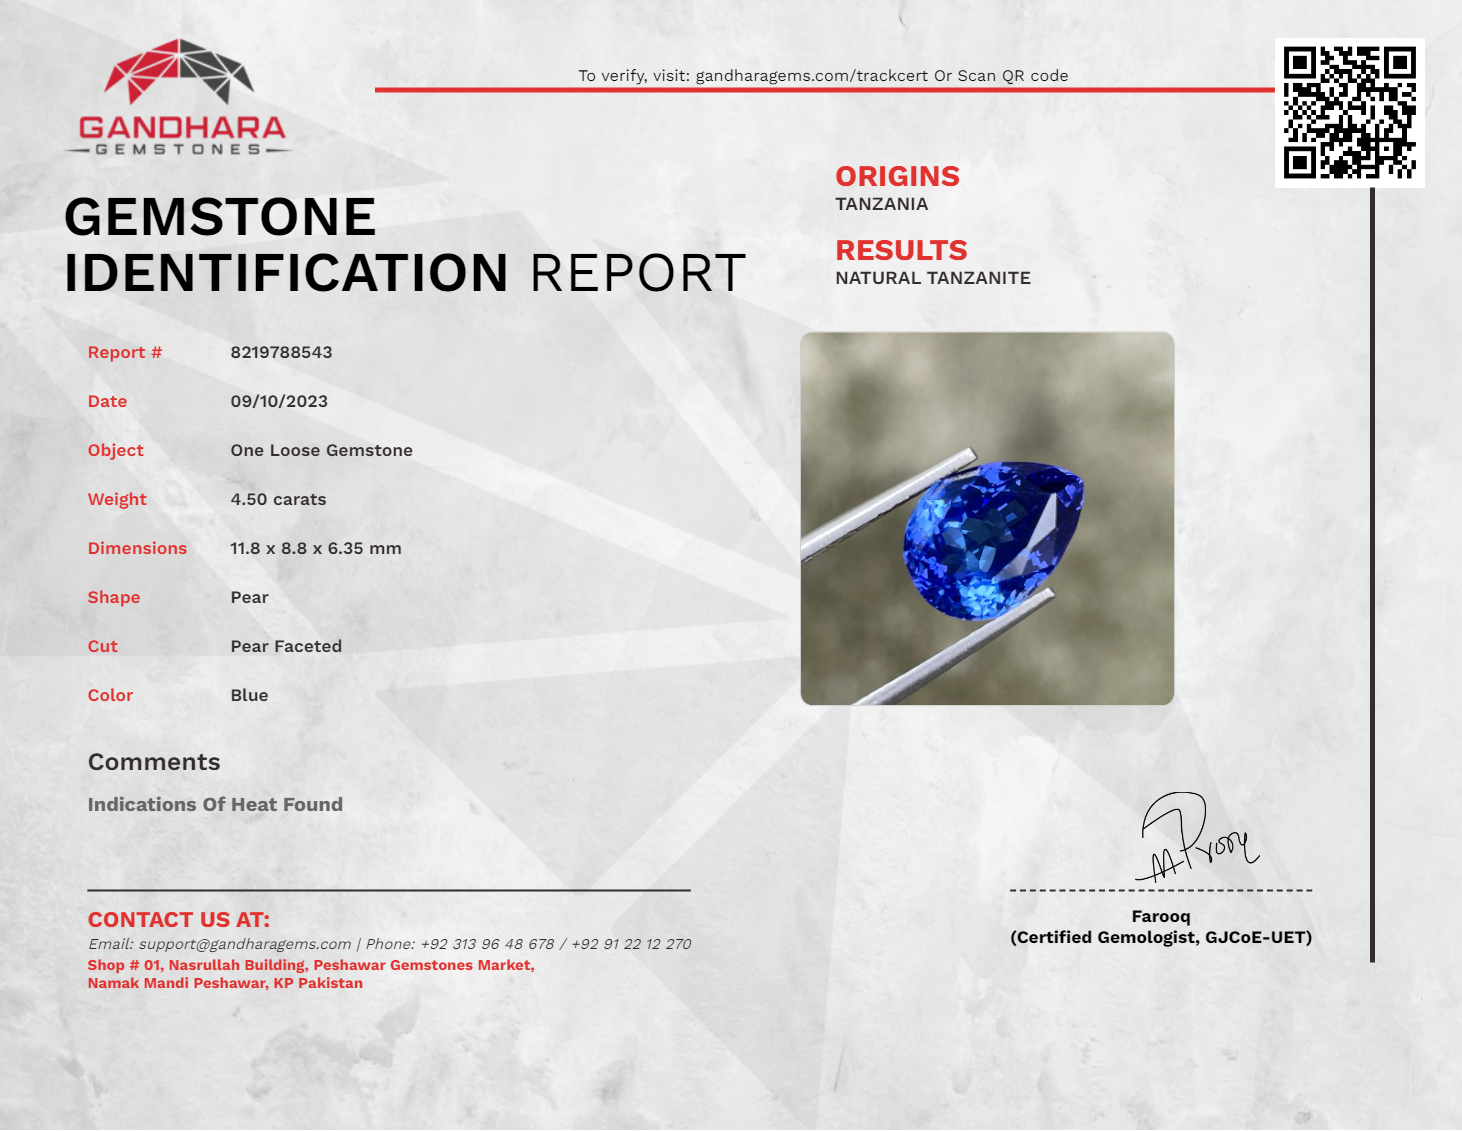 Pear Shaped Blue Tanzanite Stone 4.50 carats Natural Tanzania Gemstone